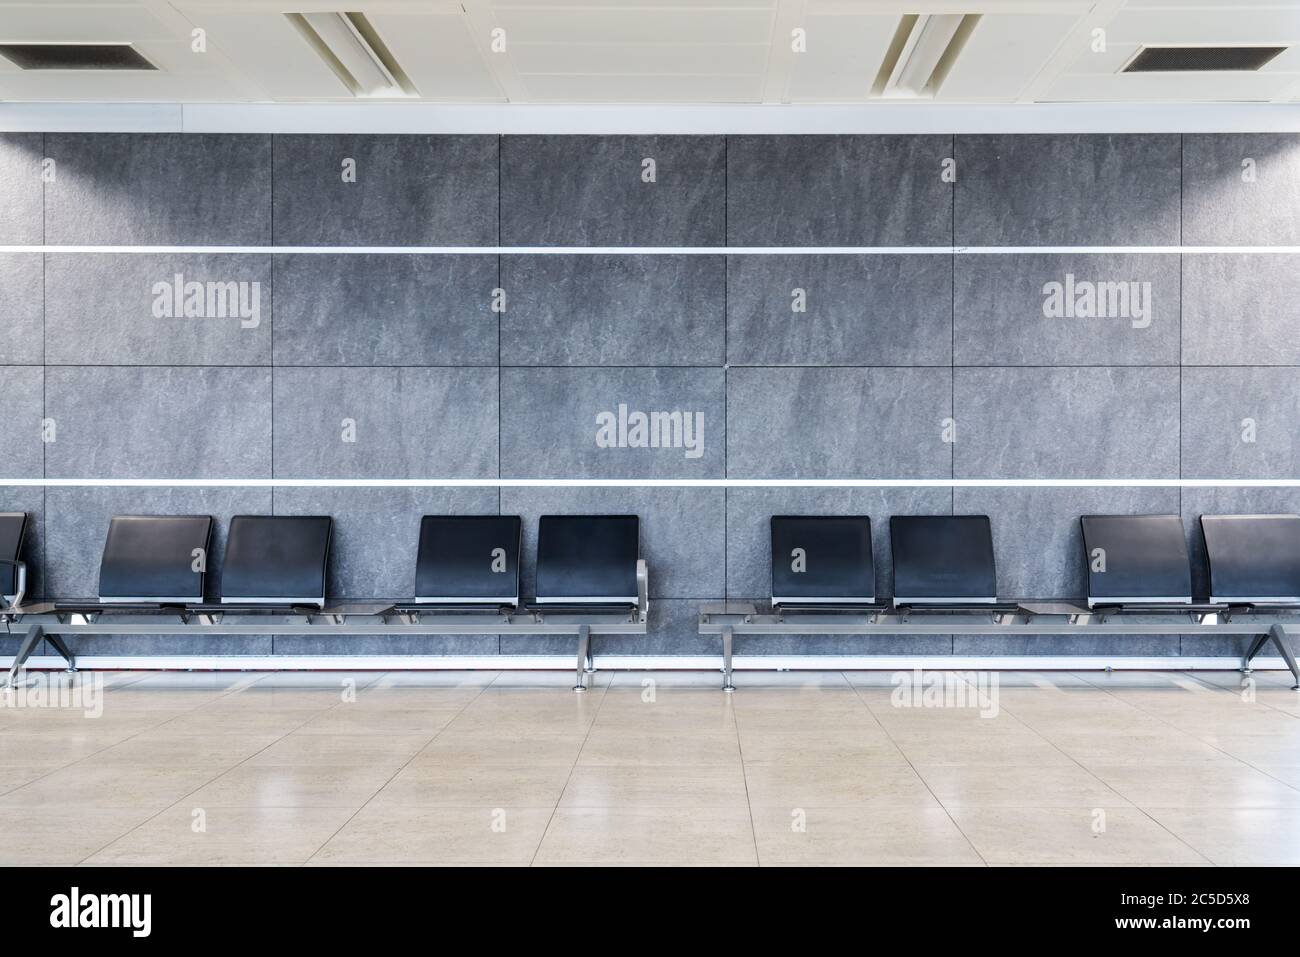 Eine Gruppe von Sitzplätzen in einer sauberen, schön eingerichteten Wartehalle am Terminal, Flughafen, Einkaufszentrum oder einem Krankenhaus. Hochwertige Fotos Stockfoto